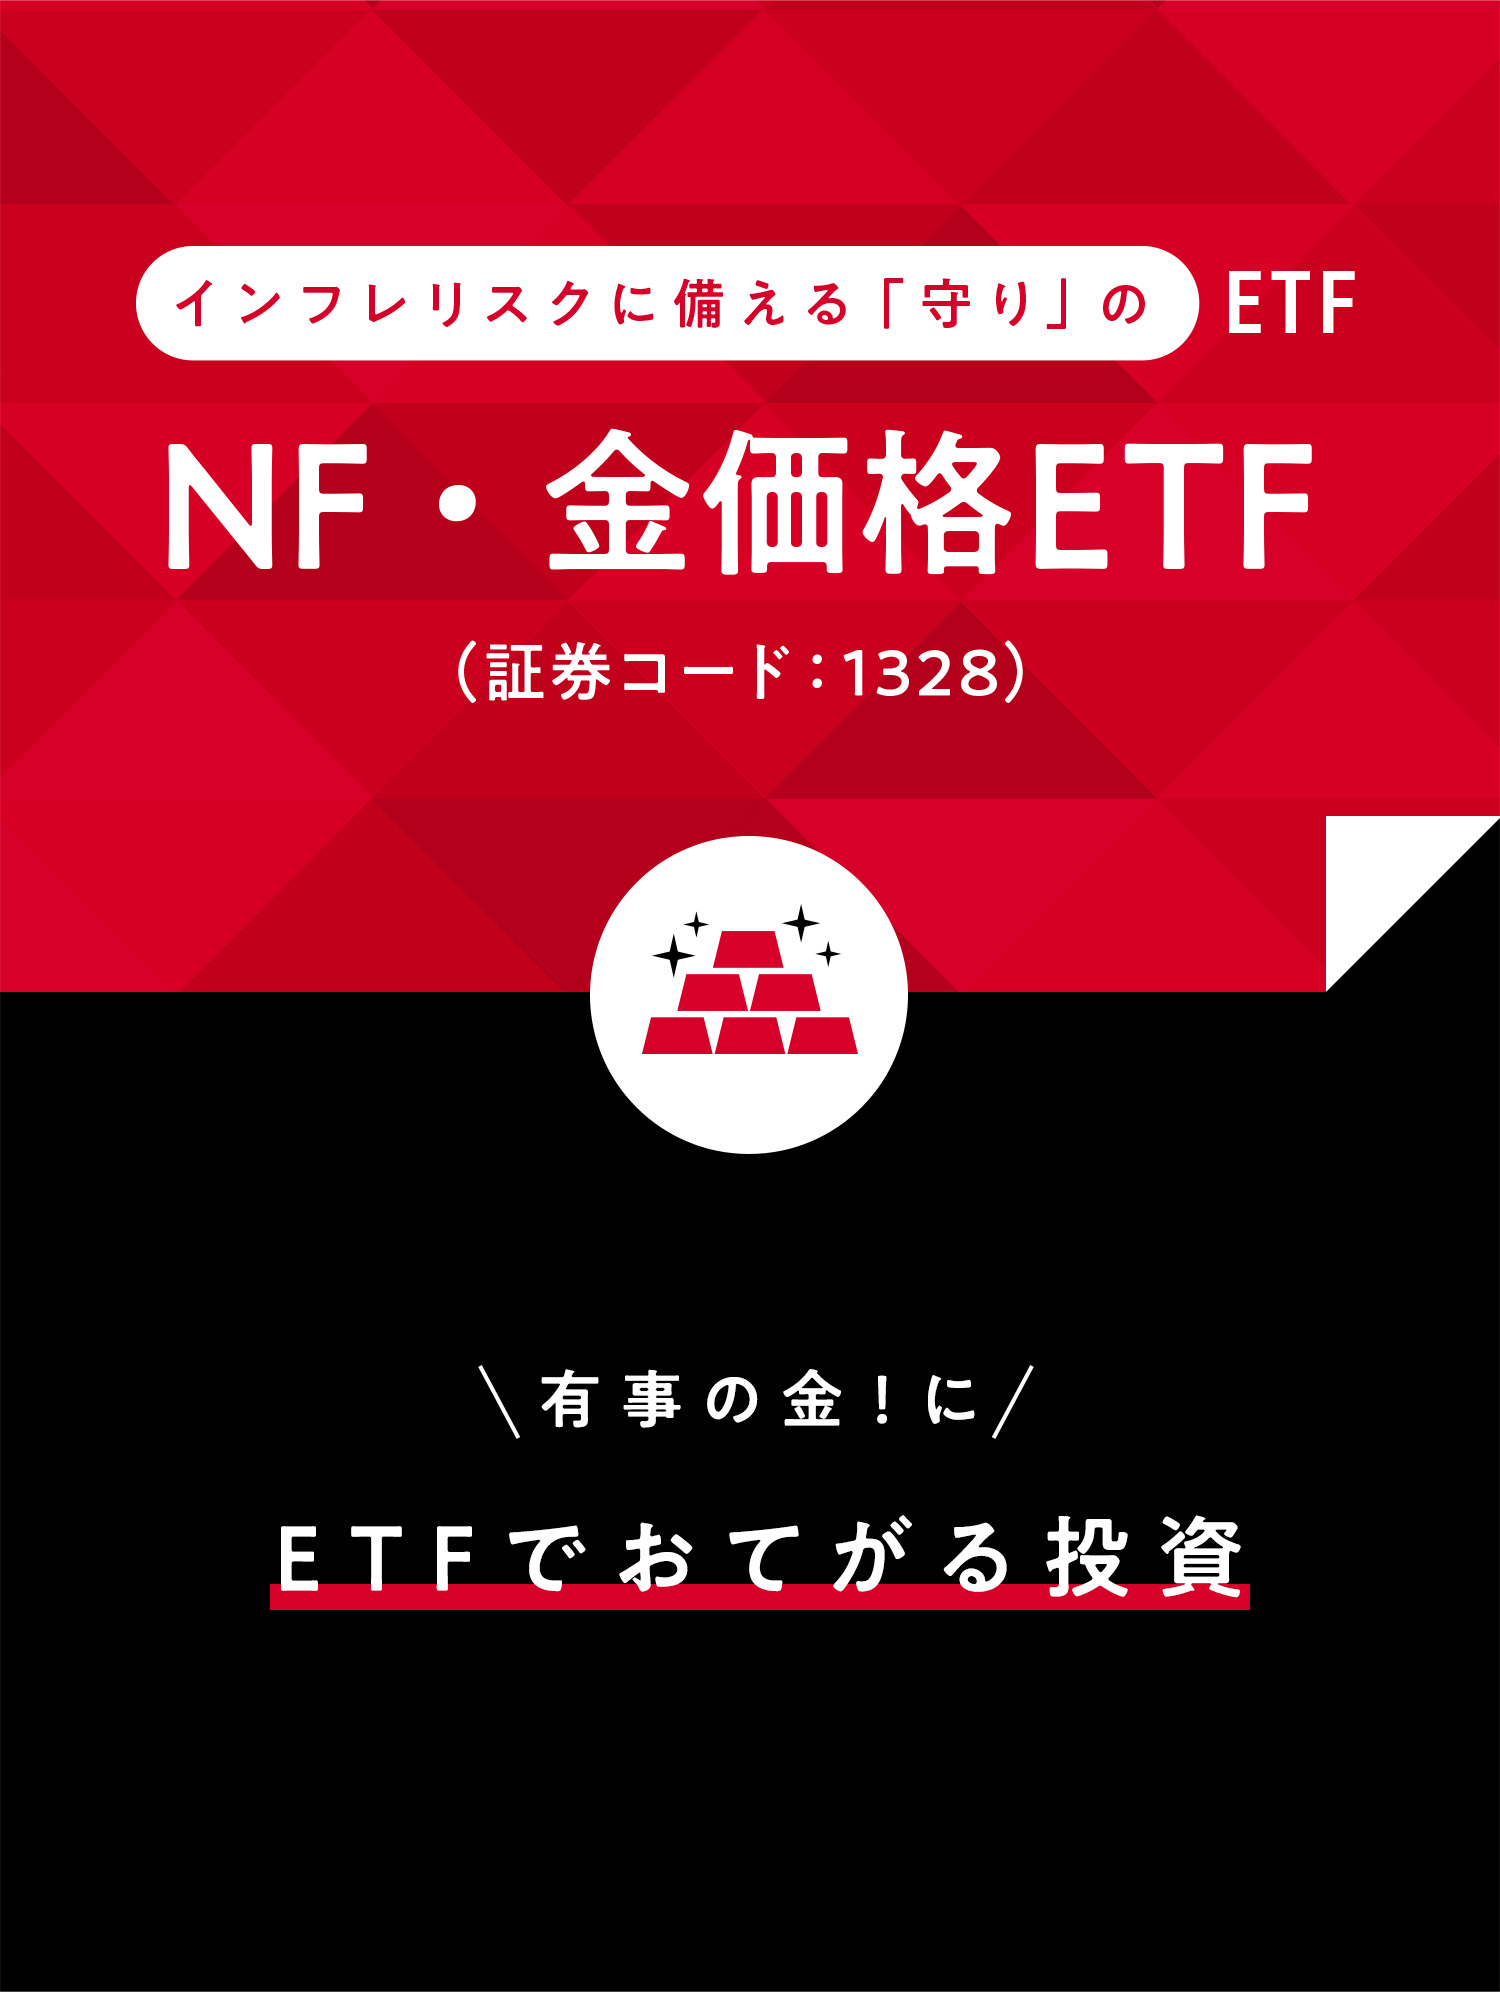 インフレリスクに備える「守り」の ETF NF・金価格ETF (証券コード:1328) 有事の金！にETFでおてがる投資